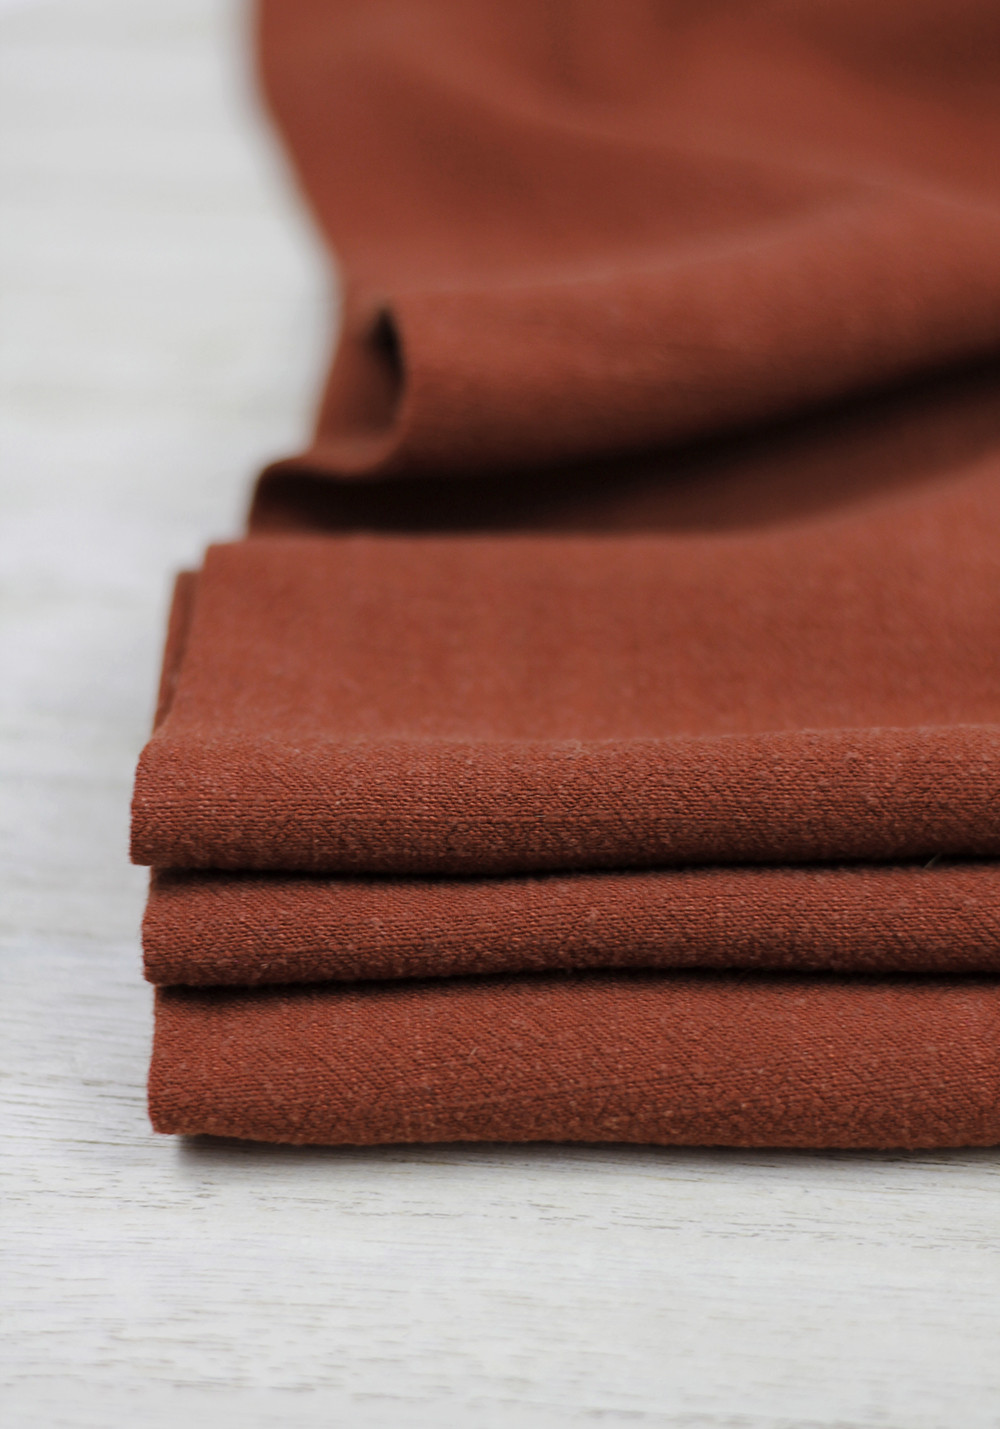 Tissu lin de couleur brique pour coudre par exemple un modèle de chemise homme